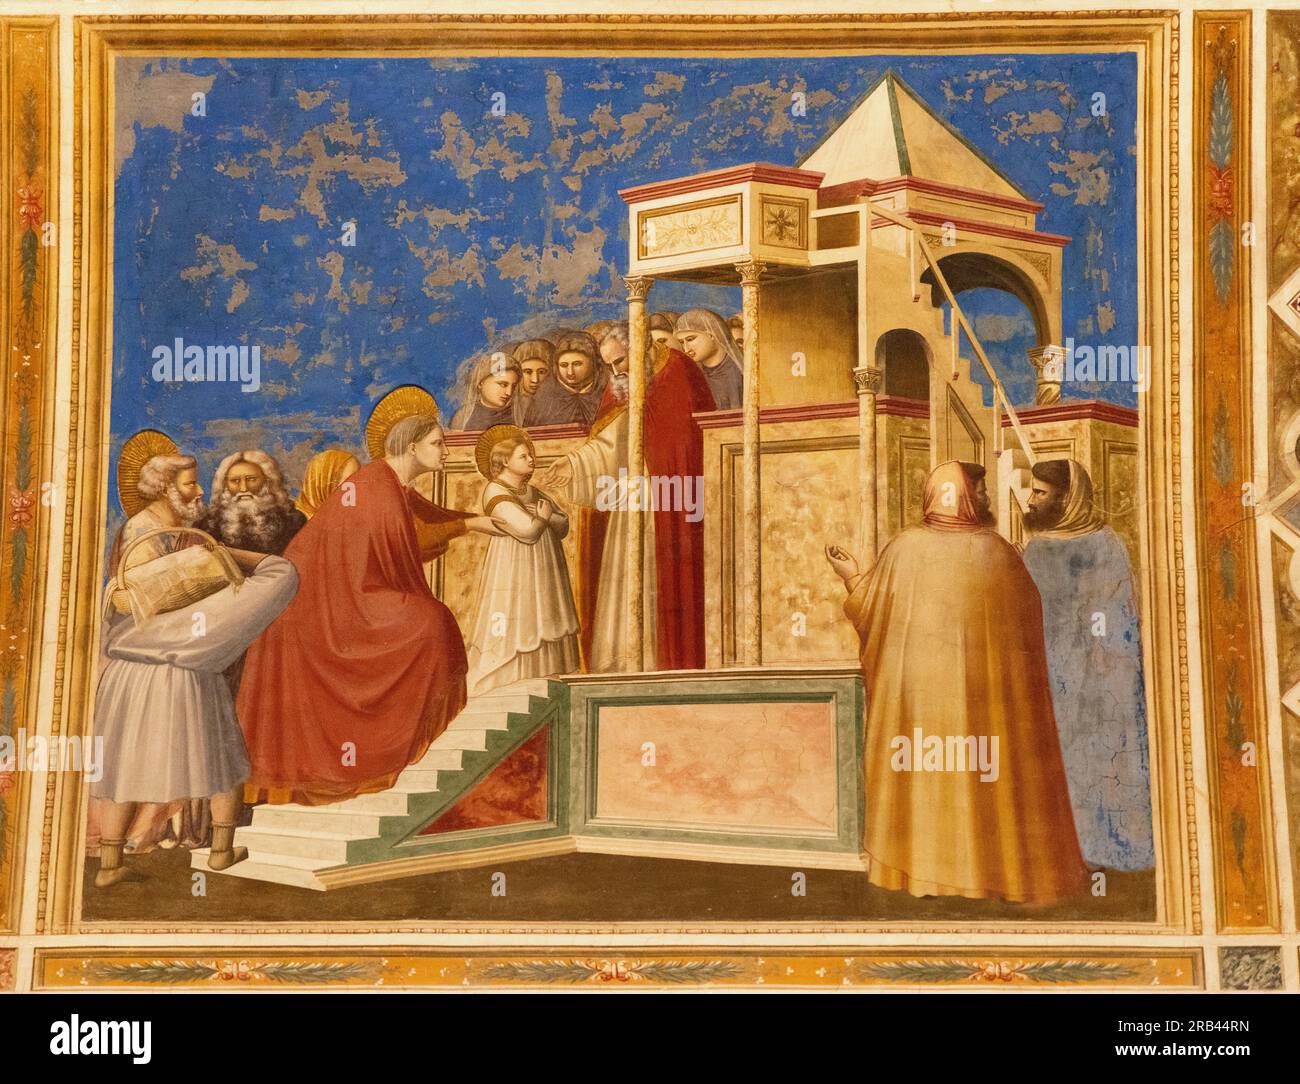 Fresques de Giottos, la chapelle des Scrovegni, Padoue - peinture italienne de la Renaissance du 14e siècle - ici 'la présentation de Marie au Temple ;' Padoue Italie Banque D'Images